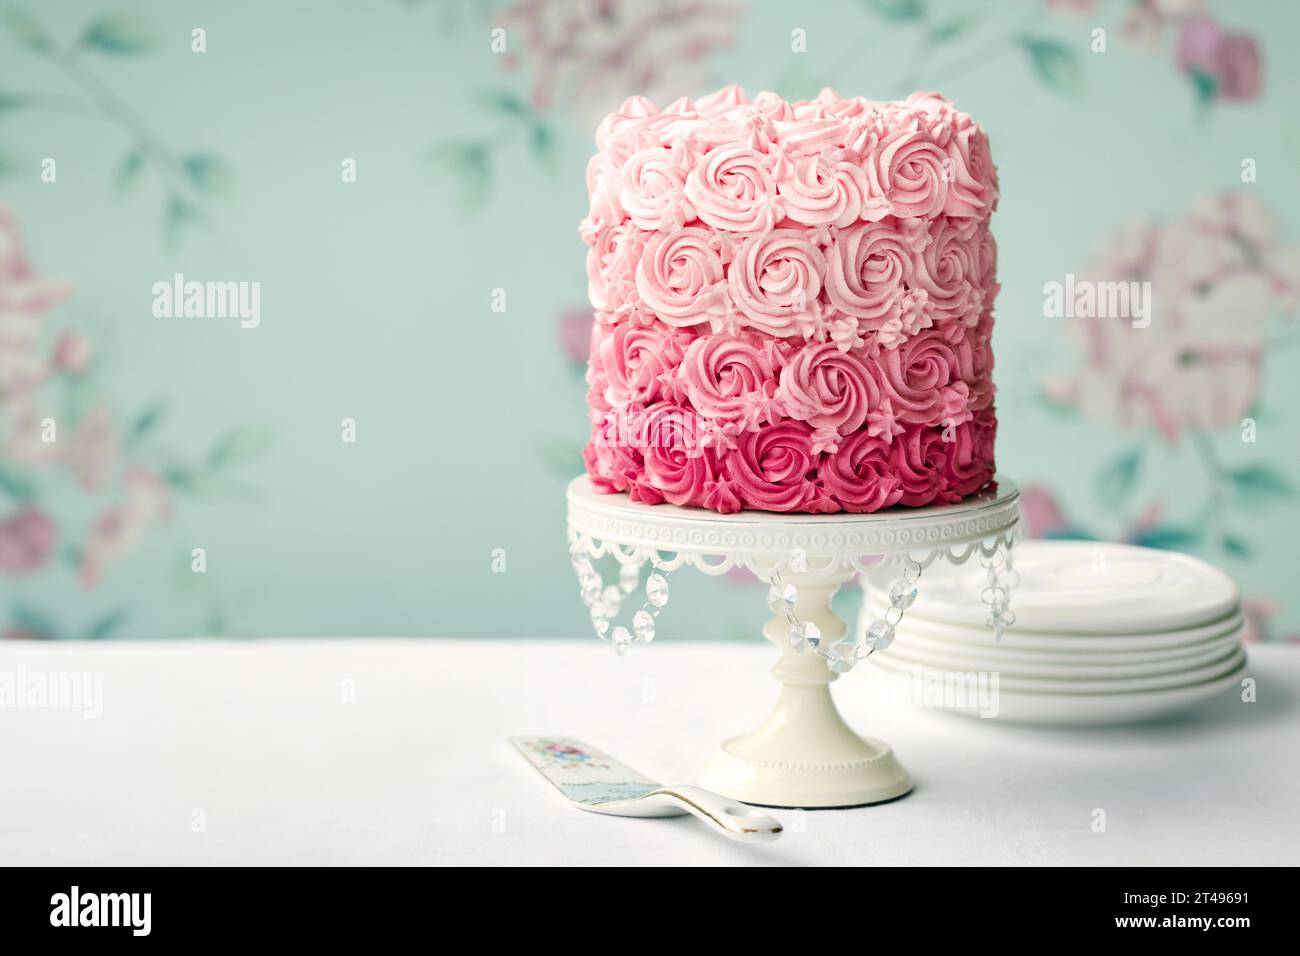 Ombre-Kuchen mit Paspelrosen in rosa Tönen Stockfoto